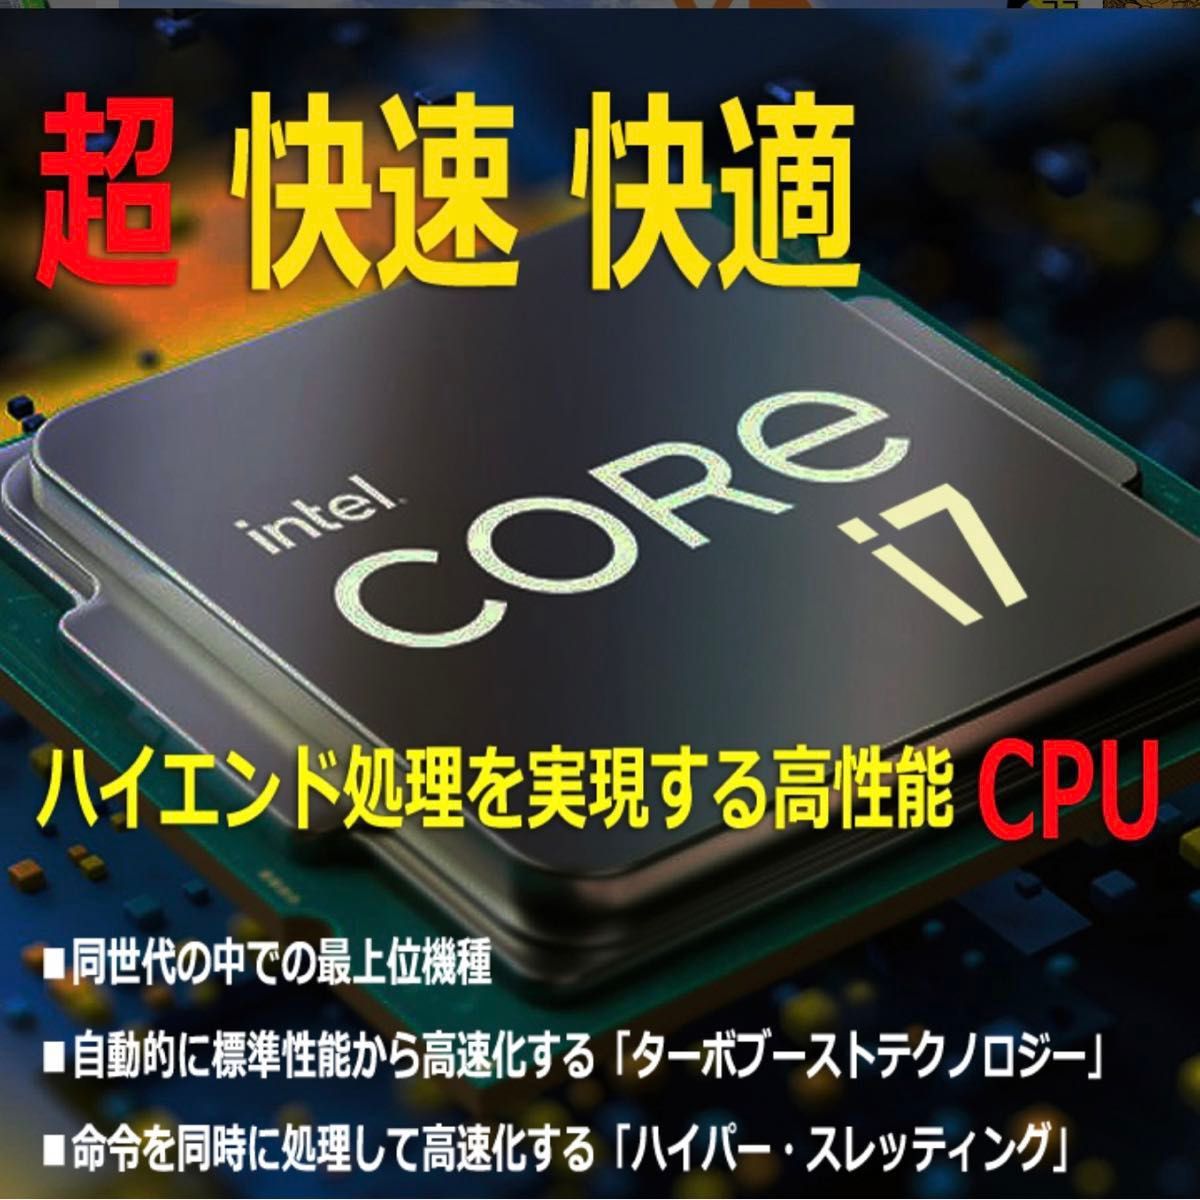 デルDELL 7040 SSF Core i7 -6700/16GB/ M.2SSD256GB+HDD1TB/AMD R7 200